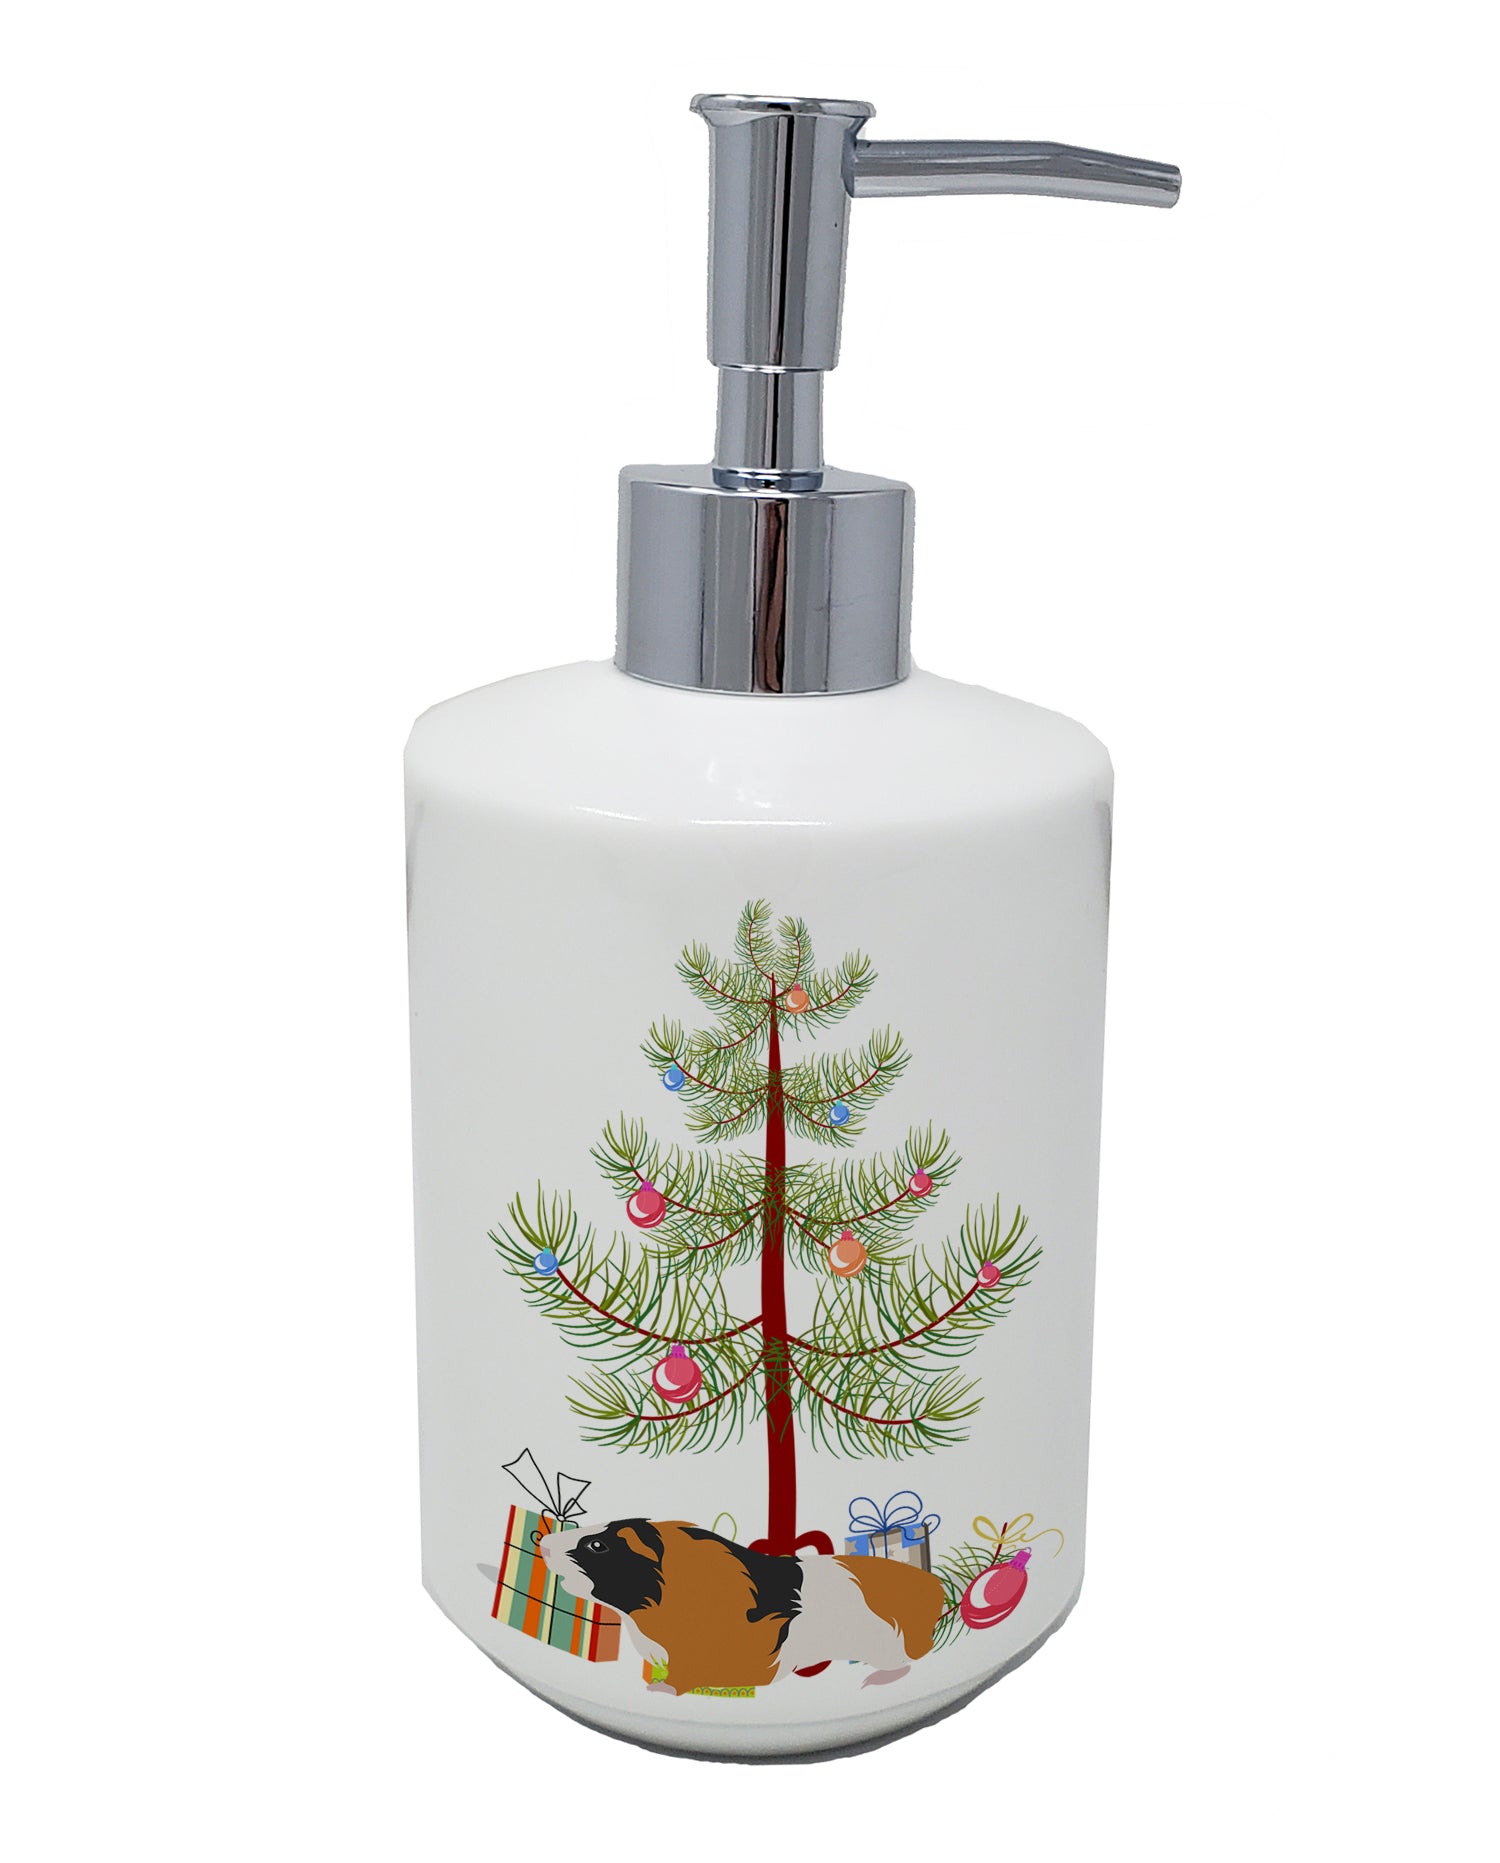 Buy this Rex Guinea Pig Merry Christmas Ceramic Soap Dispenser